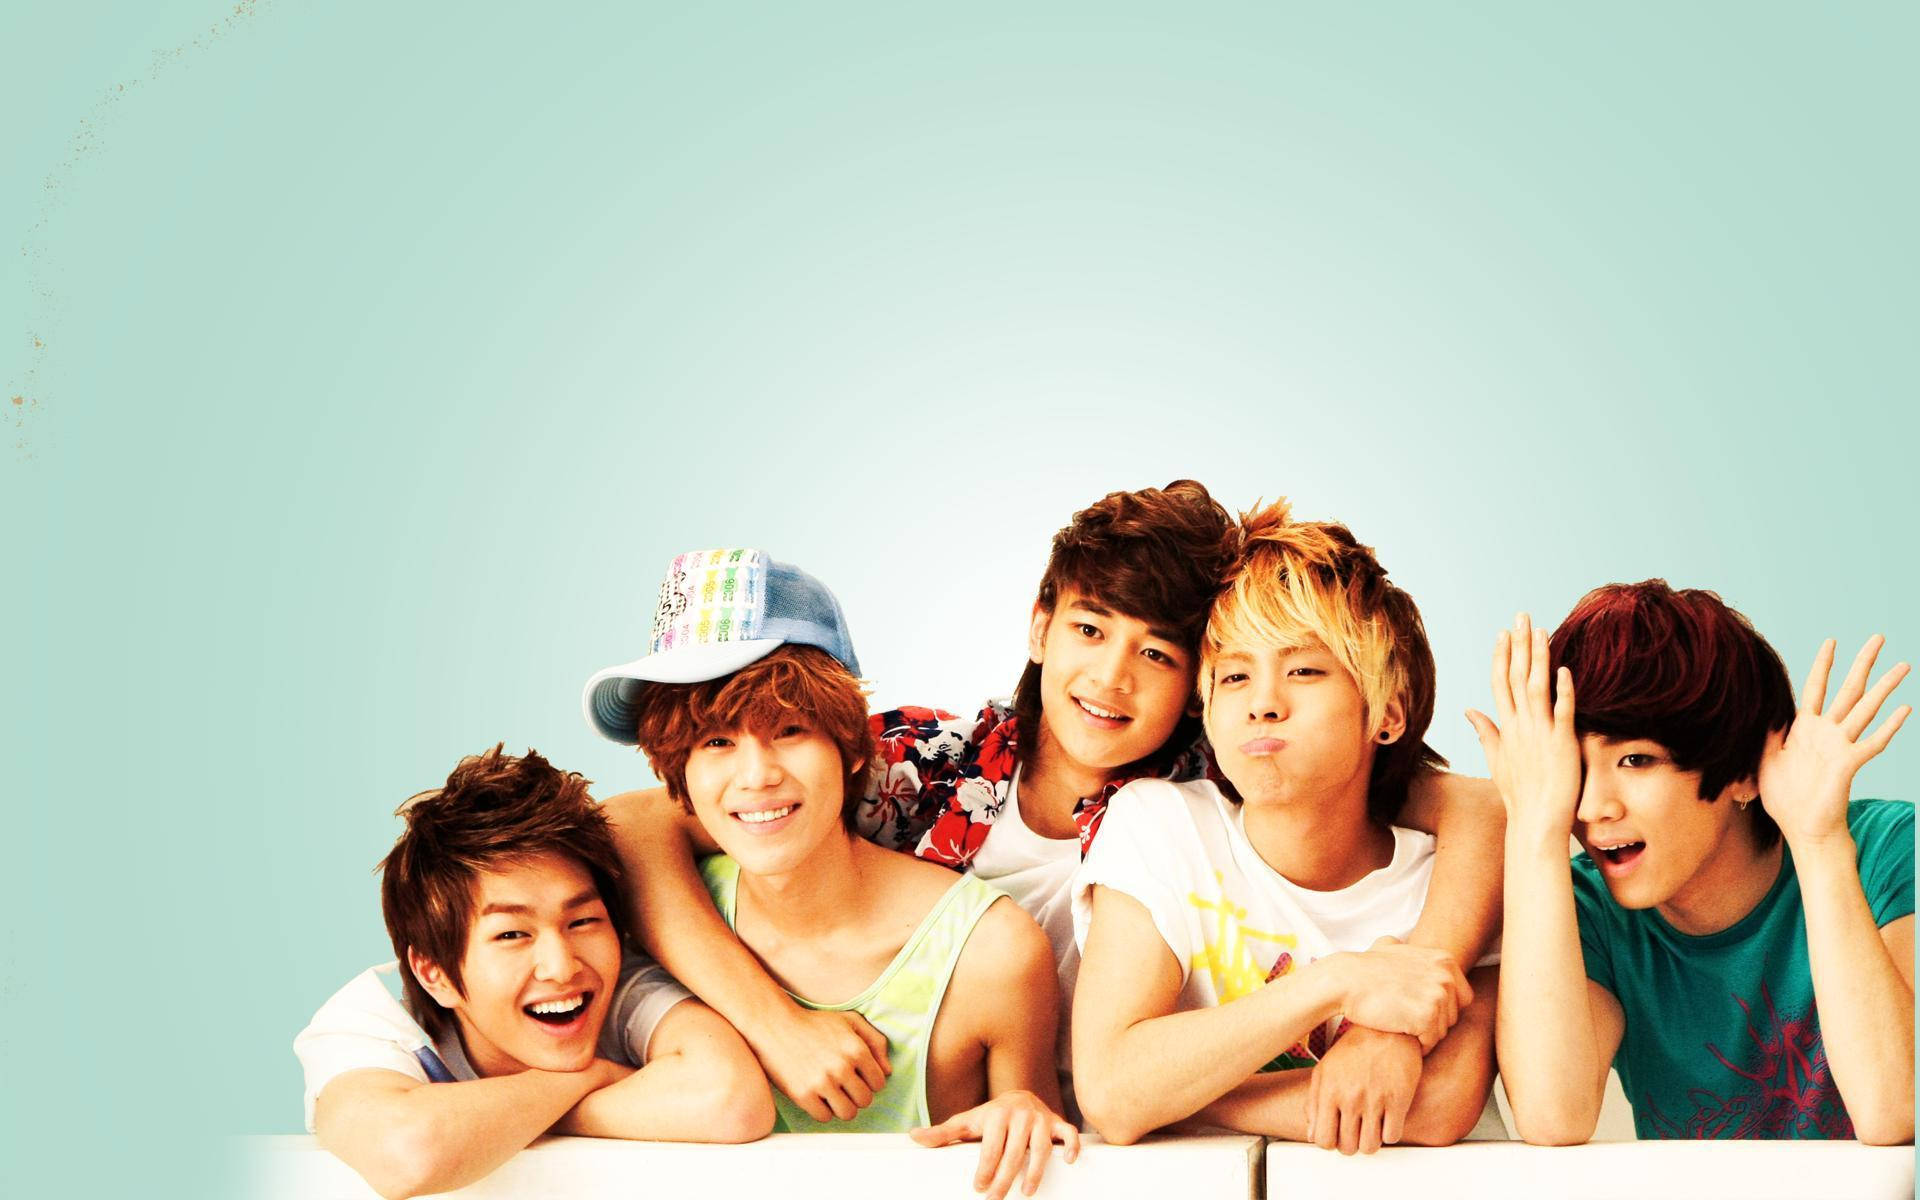 Shinee Casual Group Photo